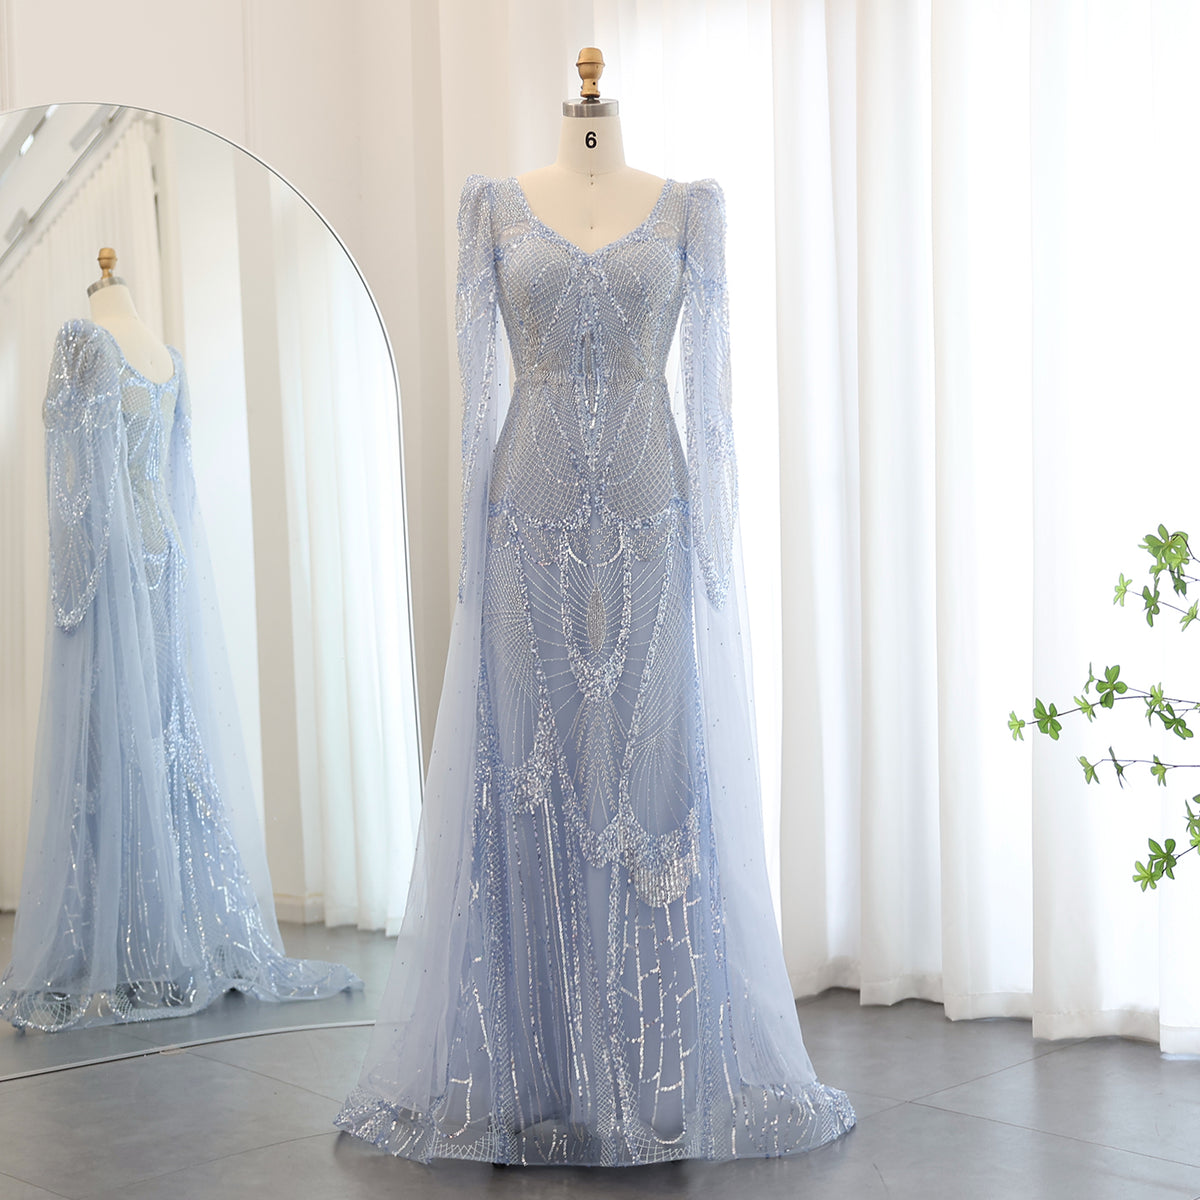 Sharon Said Luxus Meerjungfrau Hellblau Abendkleider mit Cape-Ärmeln Elegante Übergrößen Damen Hochzeitsgast Partykleider SS157